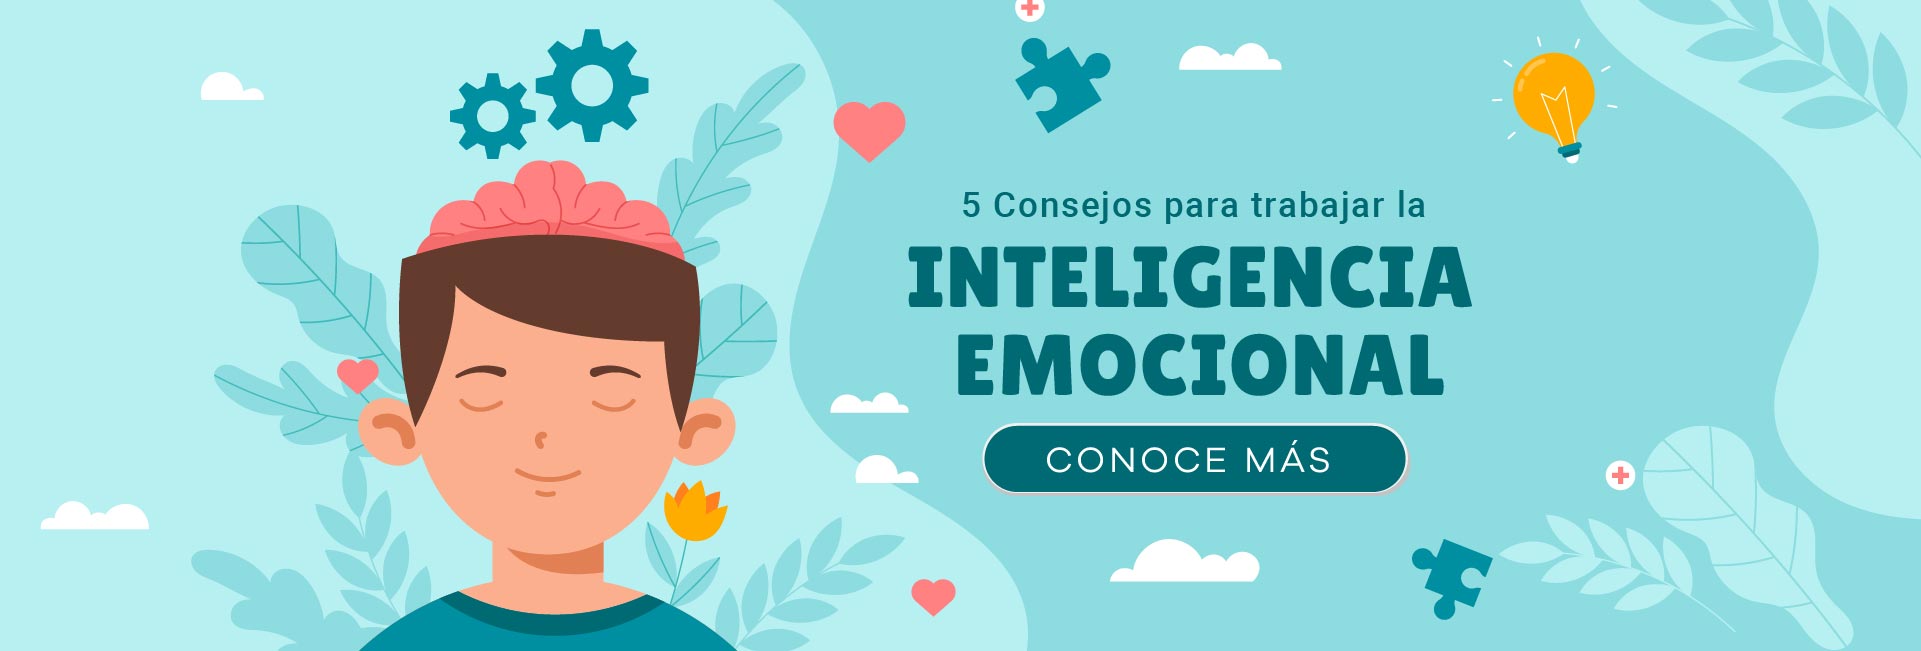 5 consejos para trabajar la inteligencia emocional 03